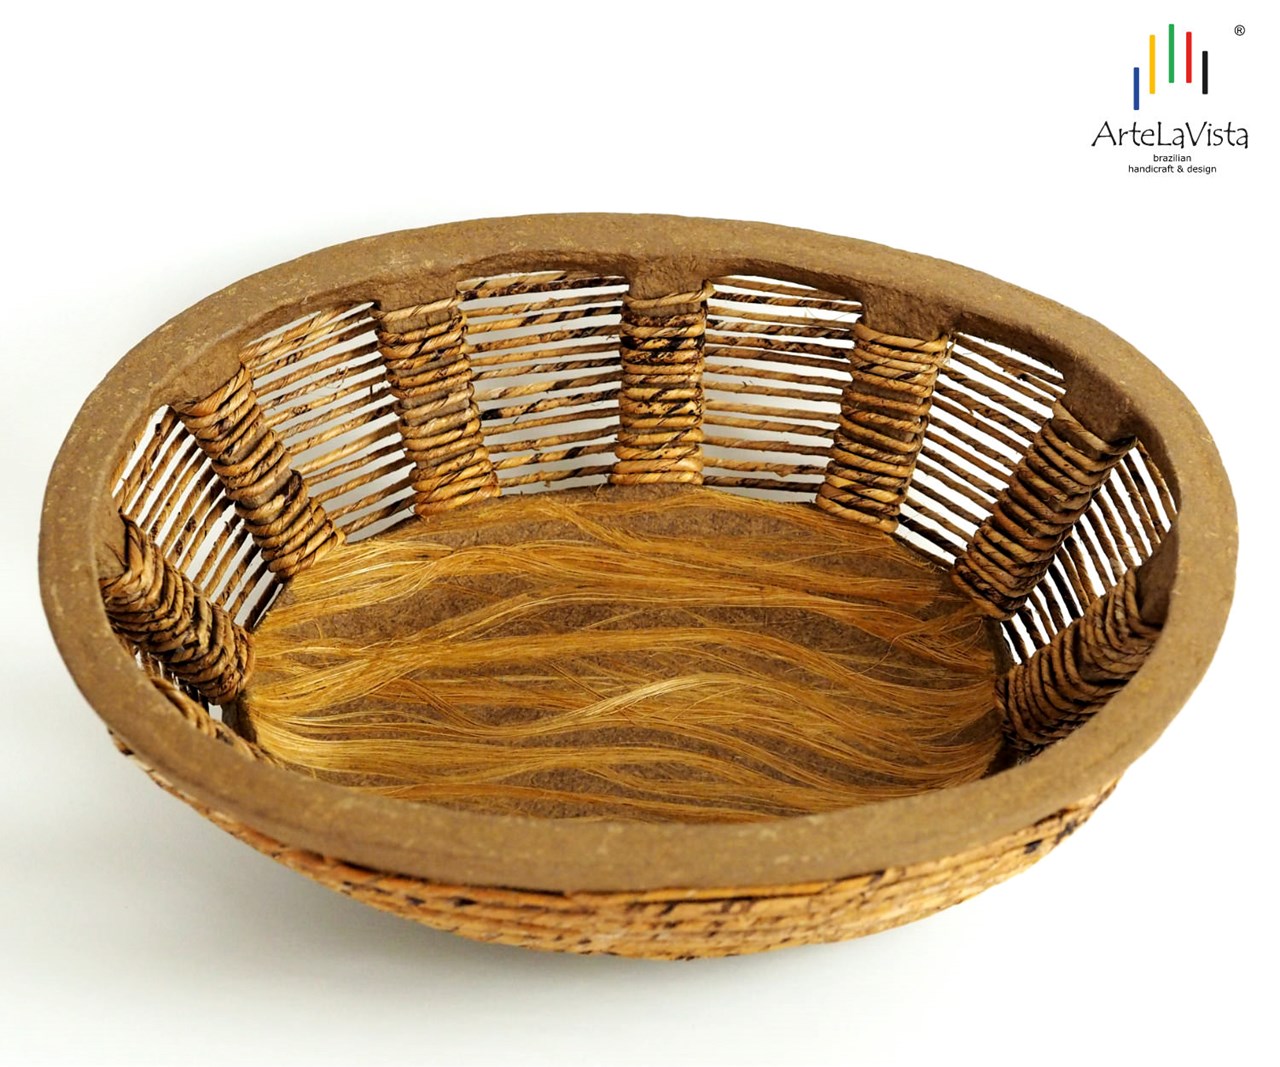 ArteLaVista - brazilian handicraft & design Produkt-Beispiele Schale Gamela Trama